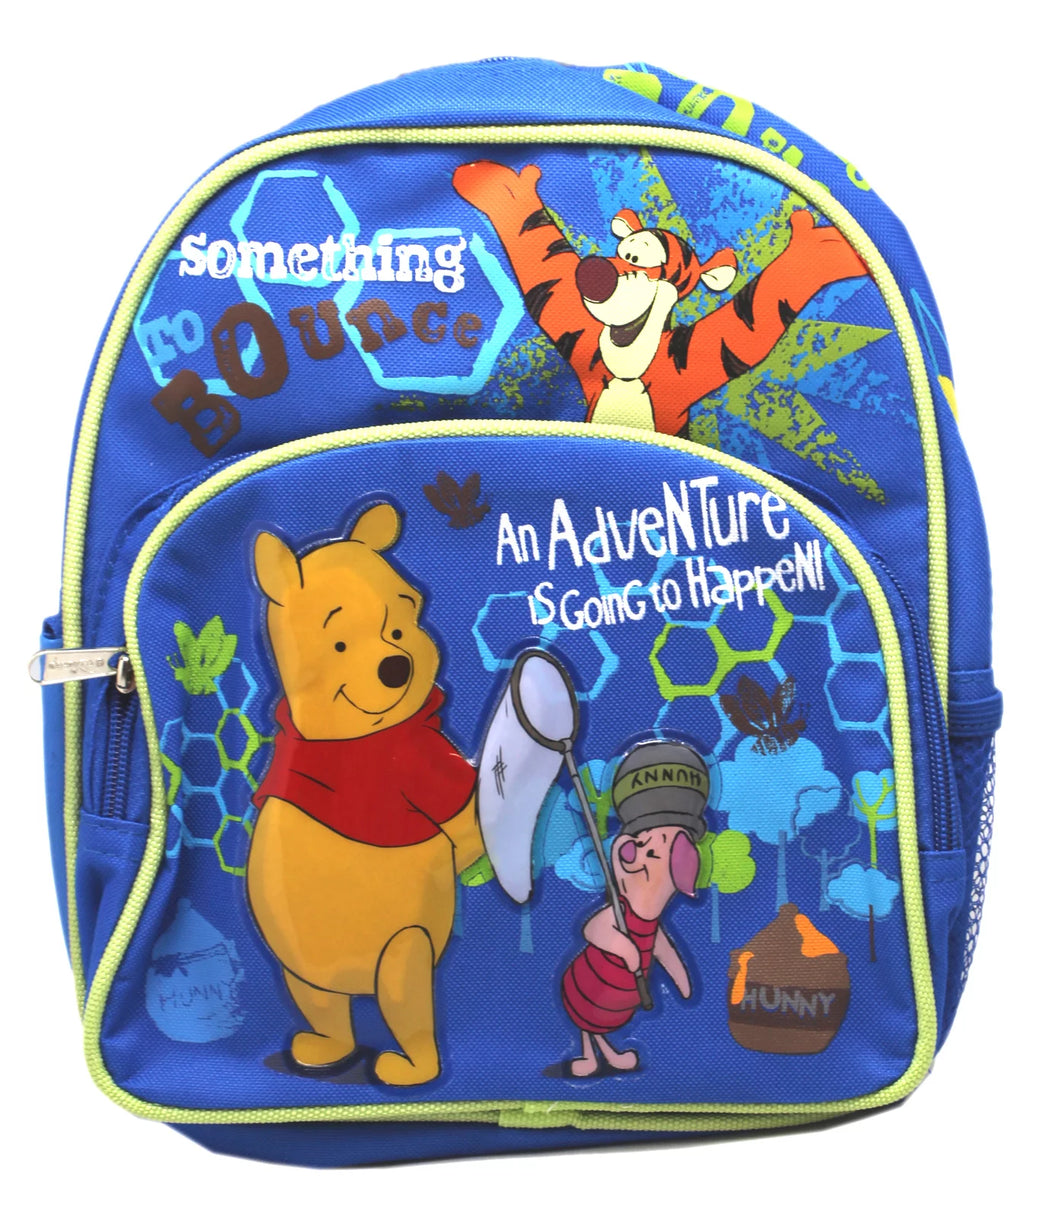 Winnie the Pooh Backpack Mini 10 inch